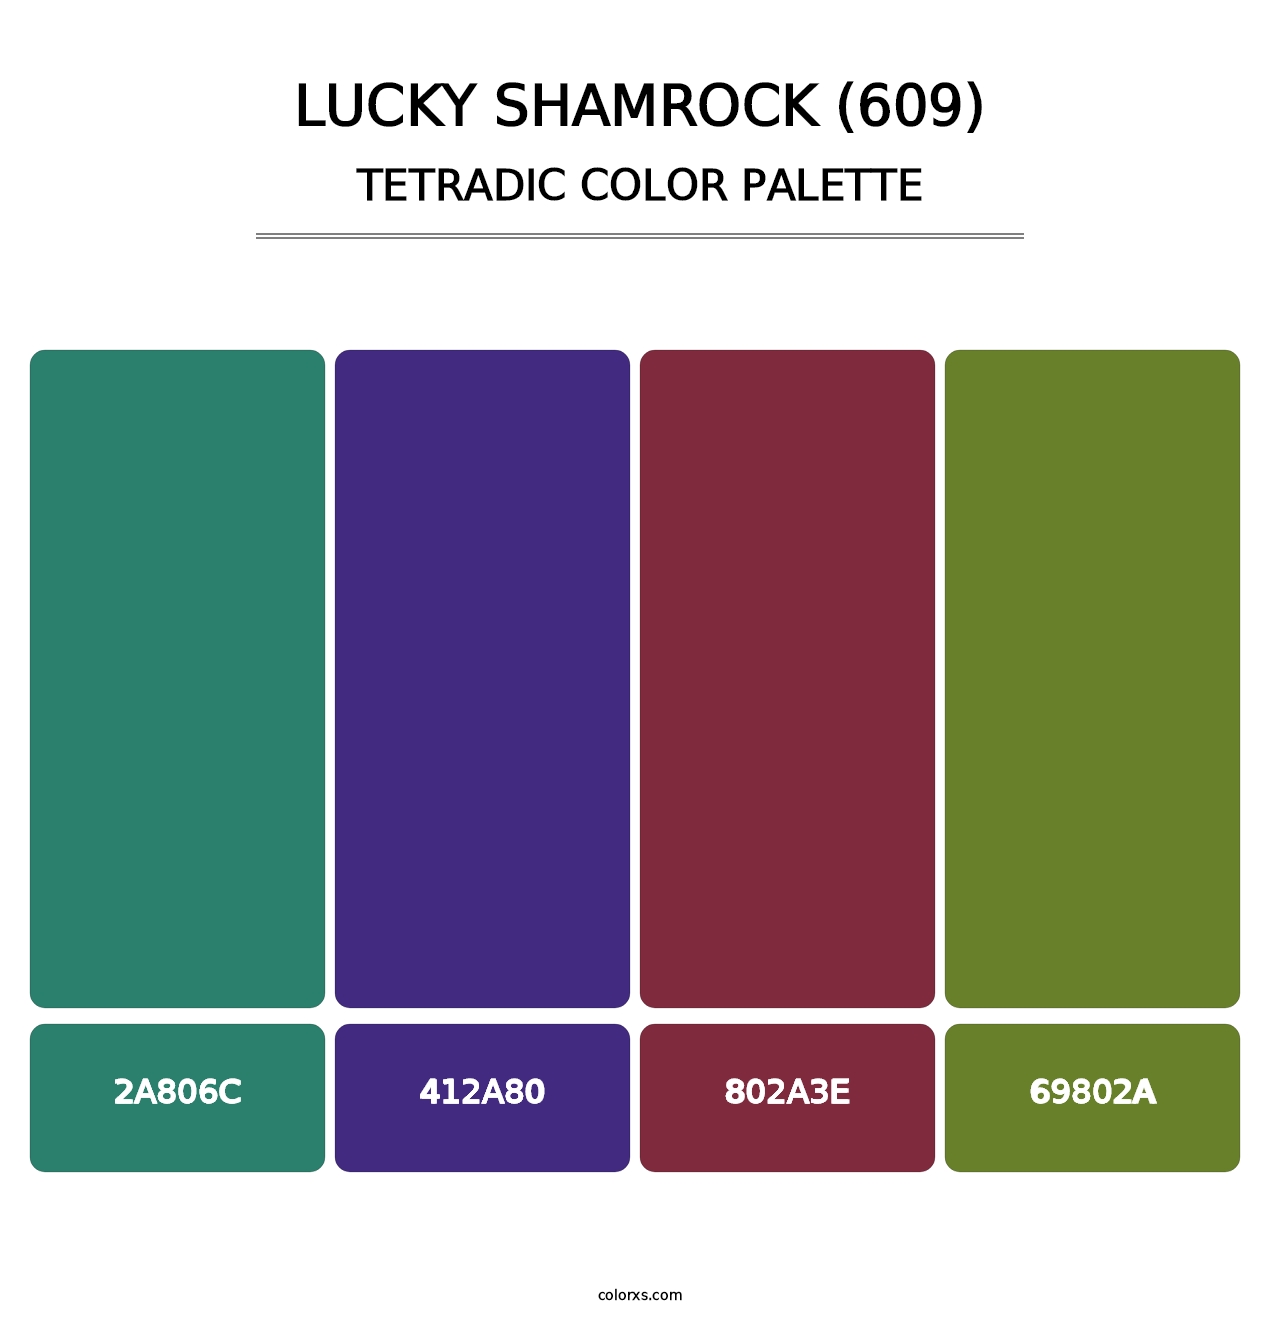 Lucky Shamrock (609) - Tetradic Color Palette